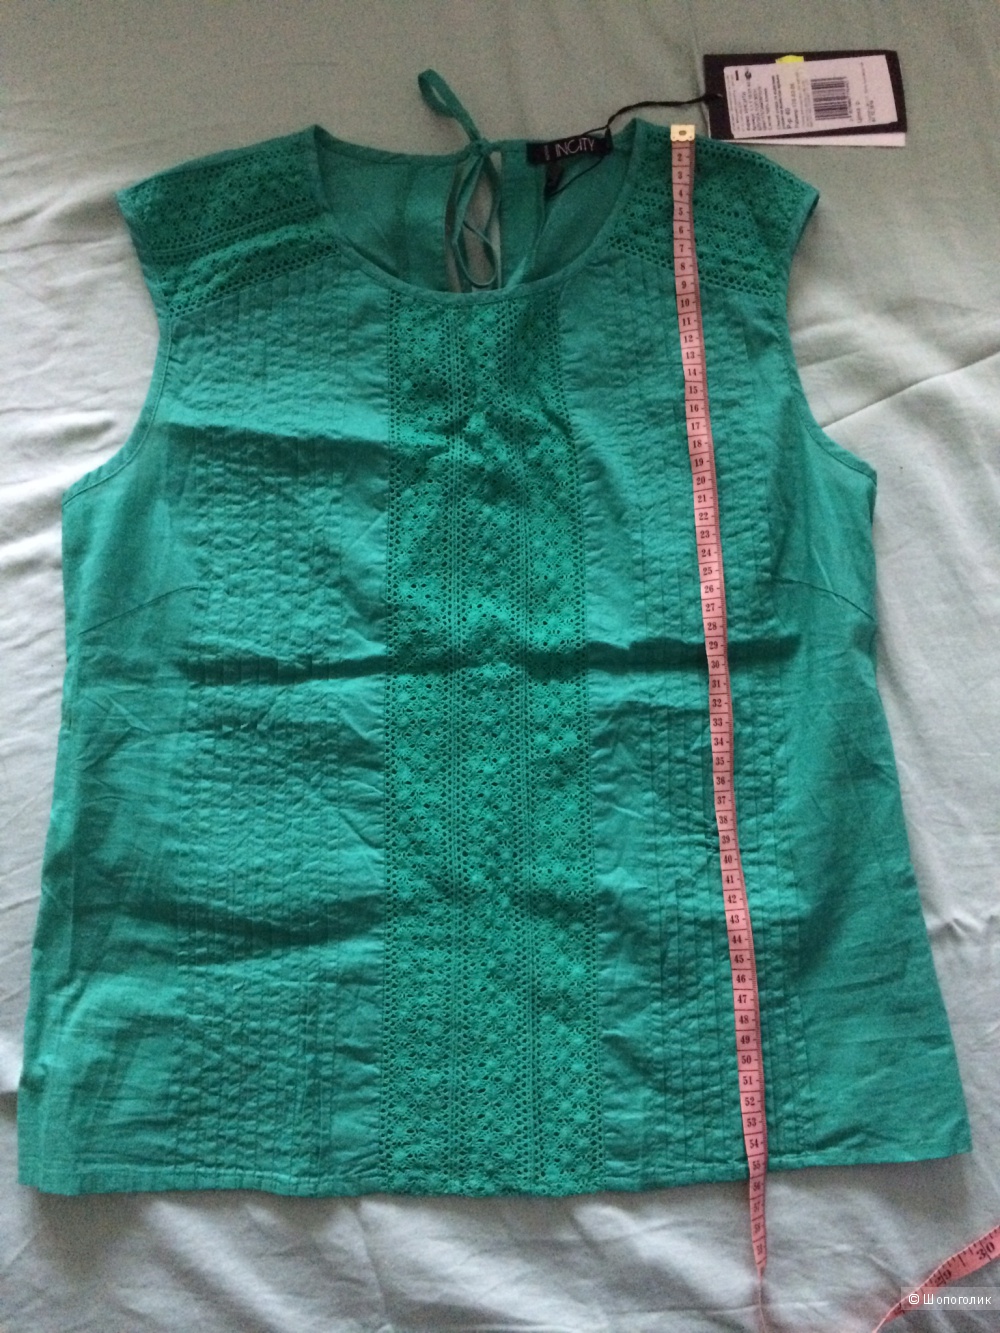 Блузка INCITY, размер 40-42, хлопок 100% цвета бриллиантовой зелени